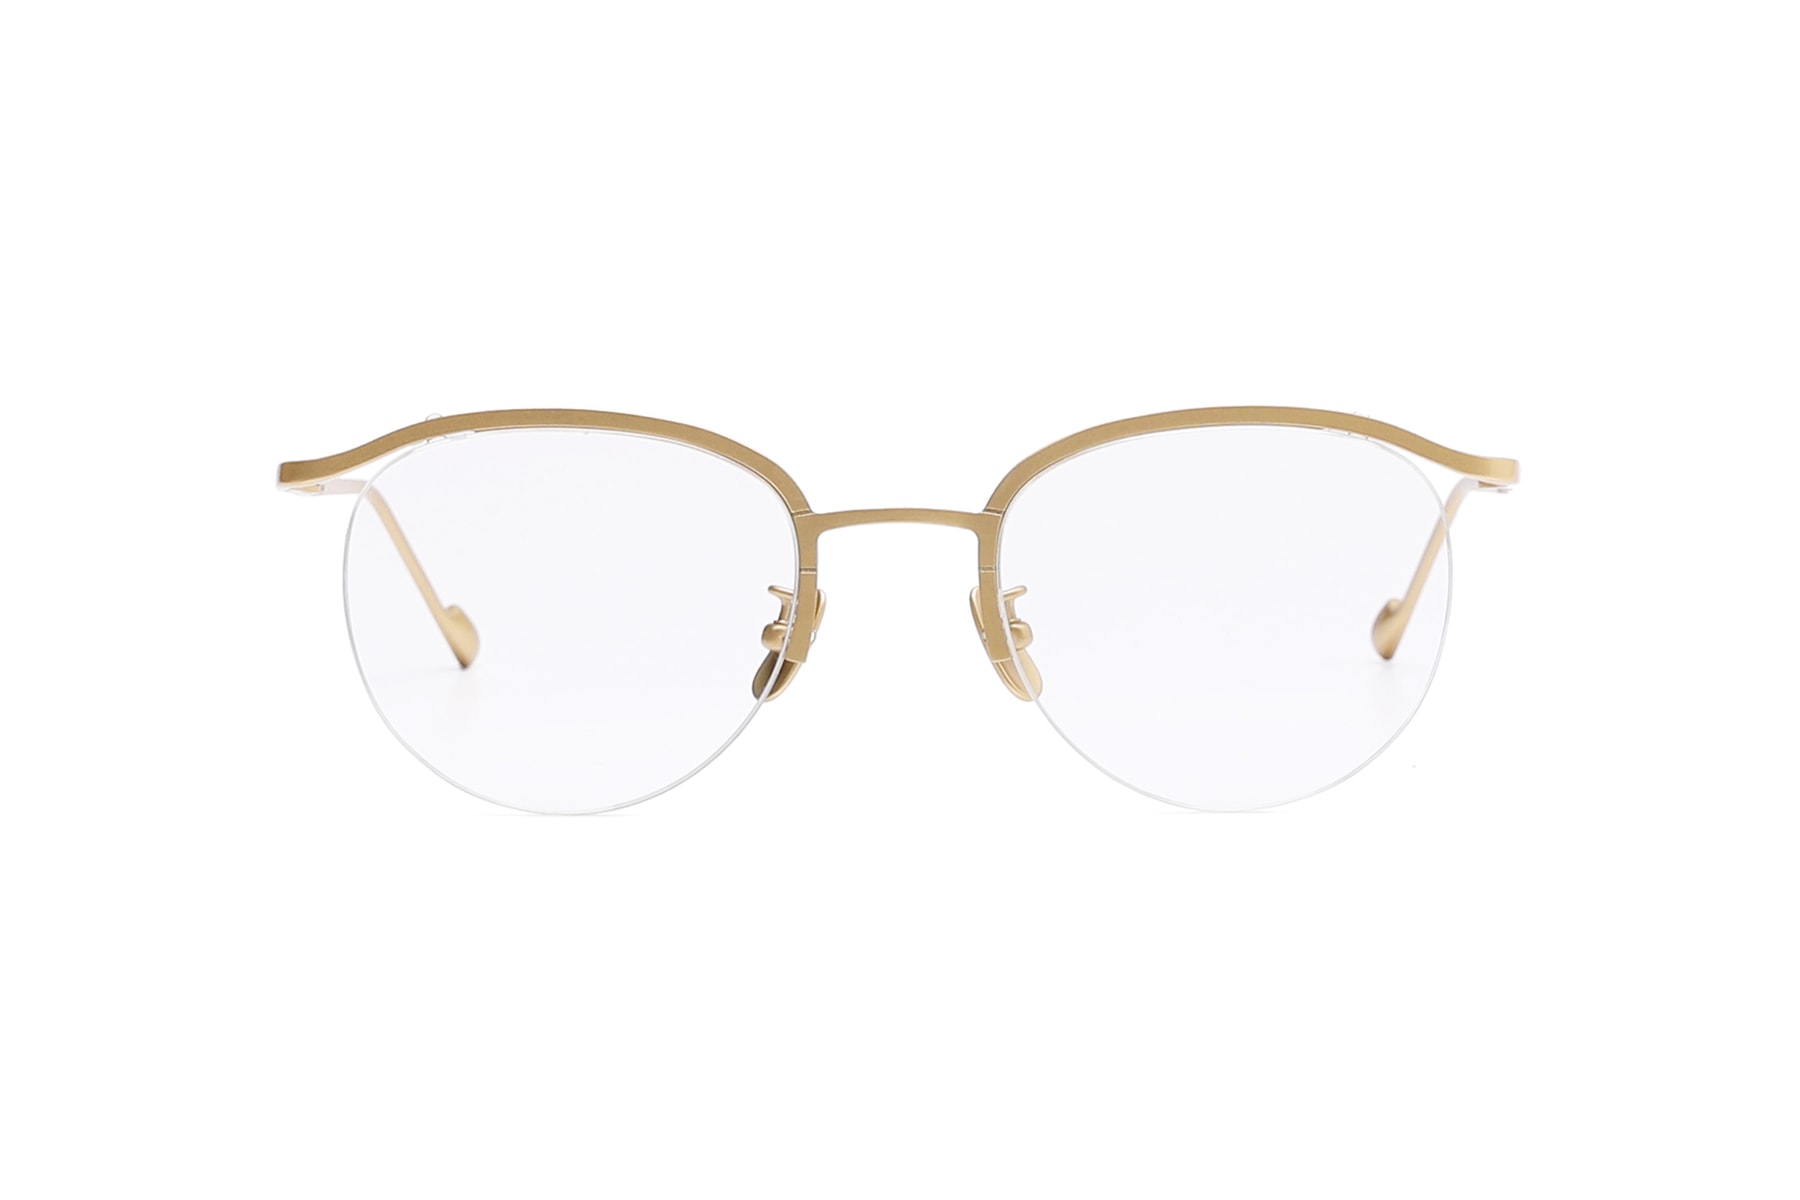 파라부트 스틸러 협업 아이웨어 안경 선글라스 페어즈 2018 paraboot stealer collaboration pairz eyewear glasses sunglasses